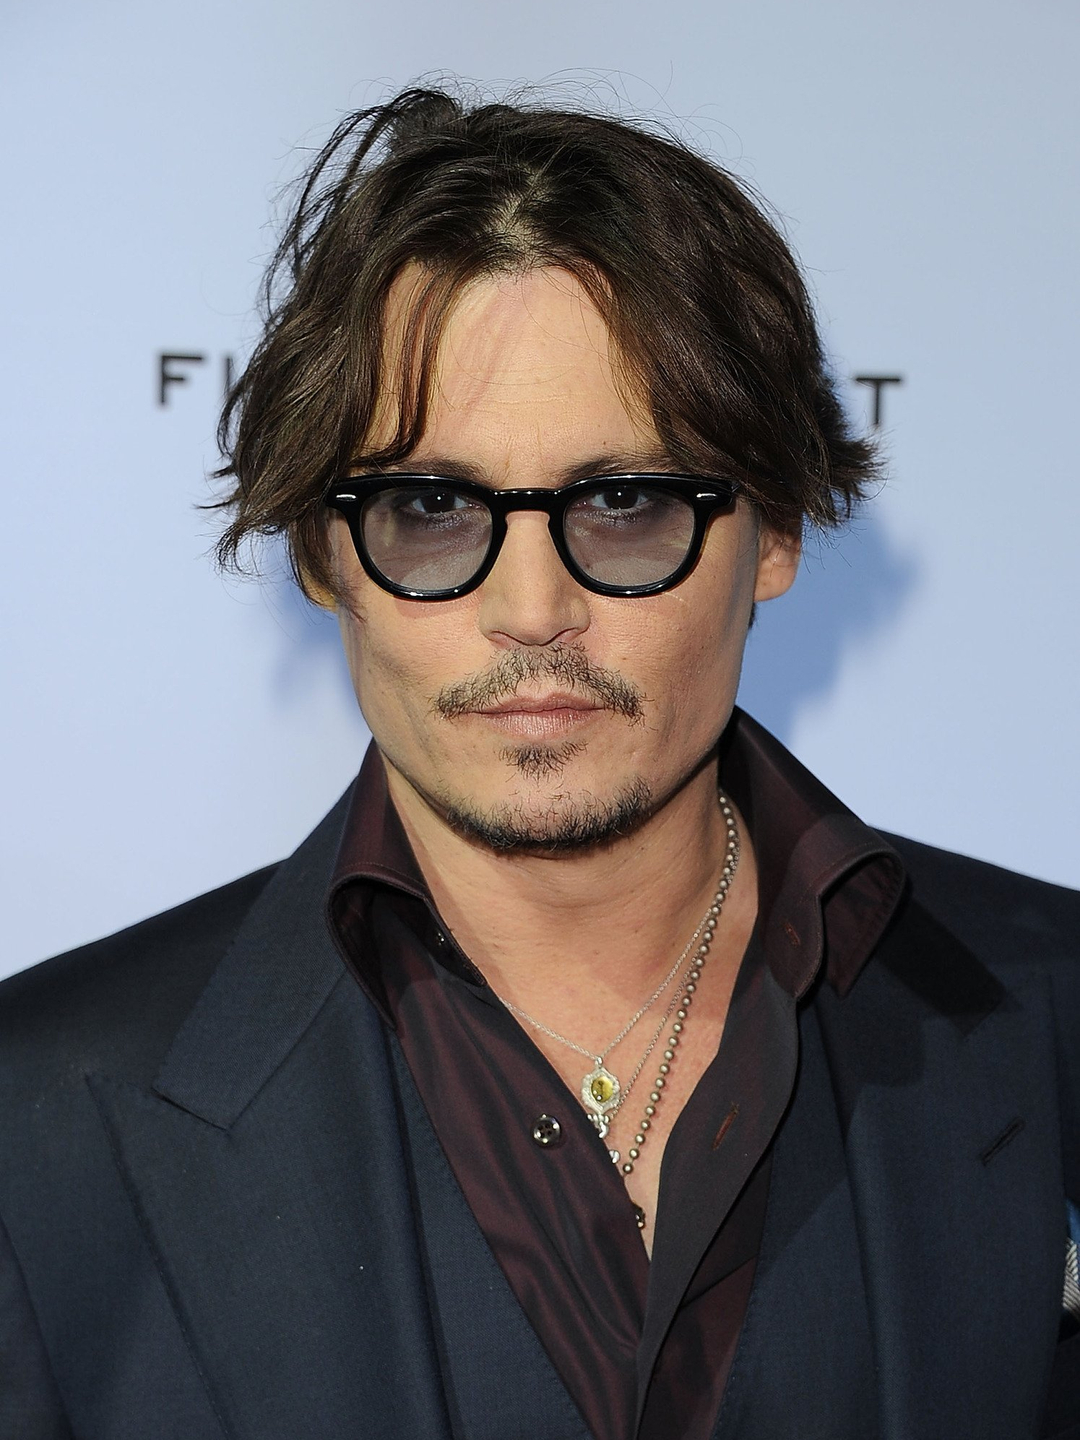 Johnny Depp current look